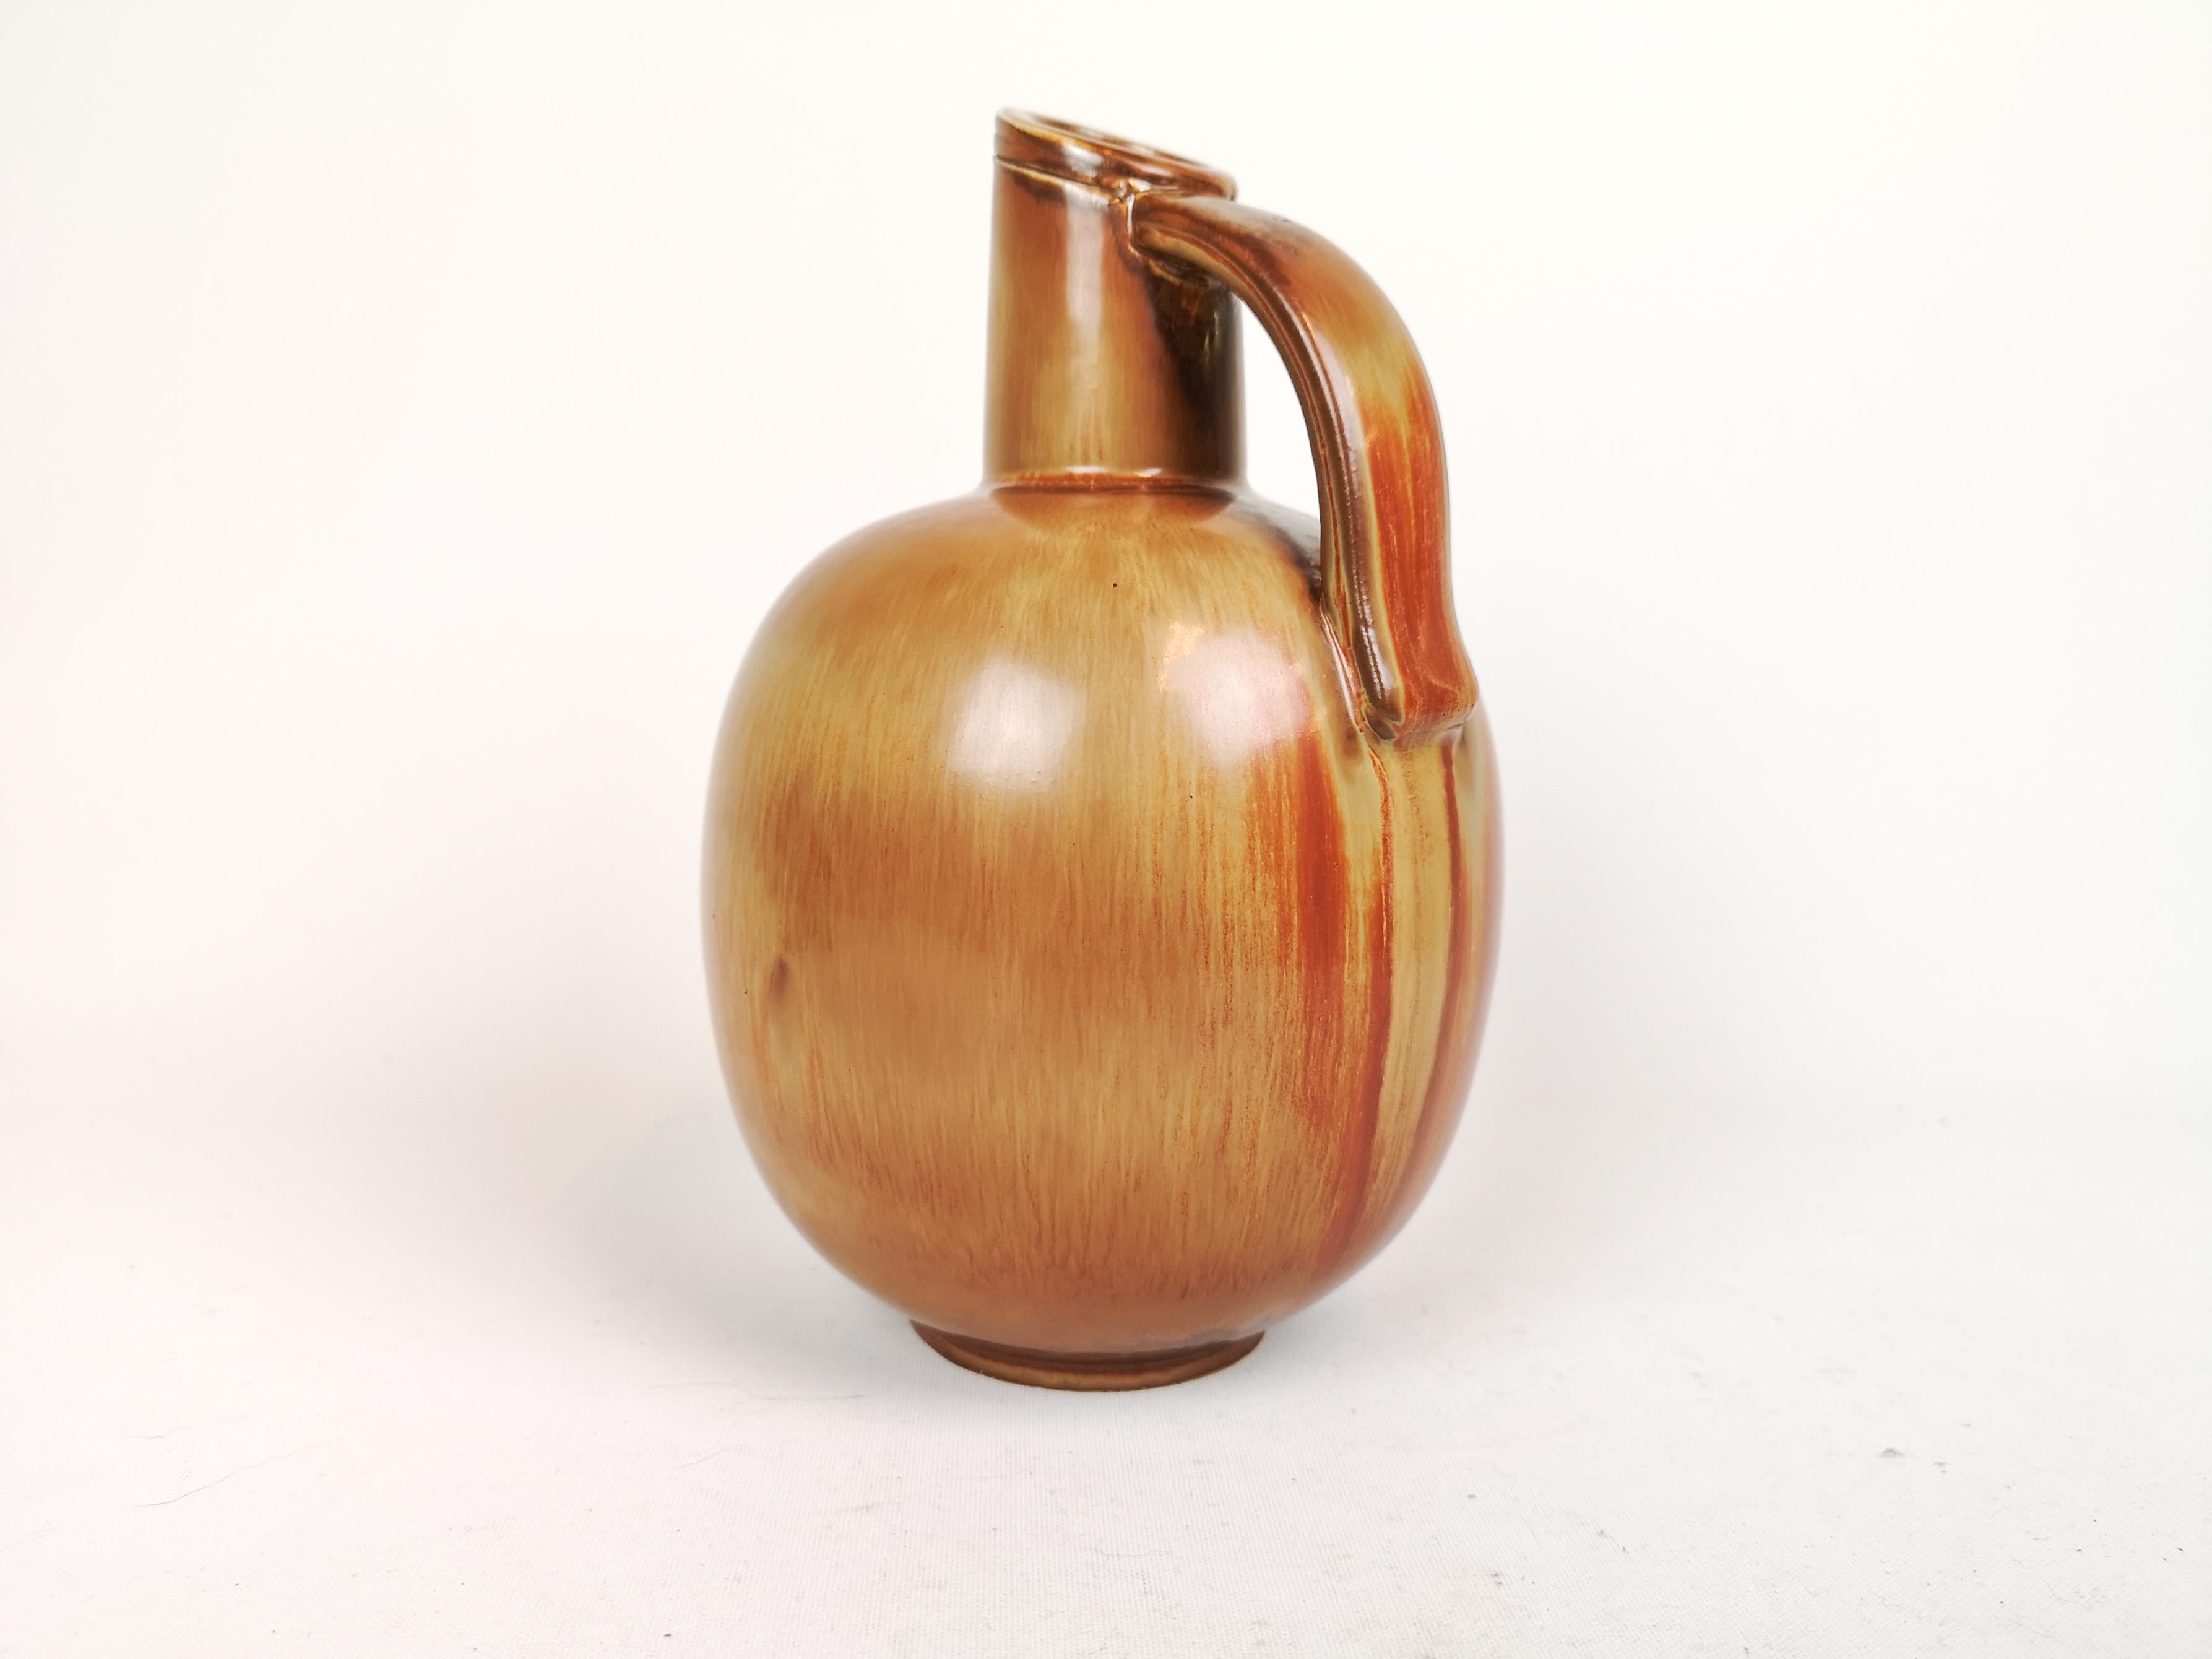 Diese wunderbare Vase wurde von Gunnar Nylund in der schwedischen Fabrik Rörstrand in den 1950er Jahren entworfen und gestaltet.

Die braun-goldene Glasur ist erstaunlich und passt wunderbar zu Form und Gestalt der Vase 

Sehr guter Zustand.